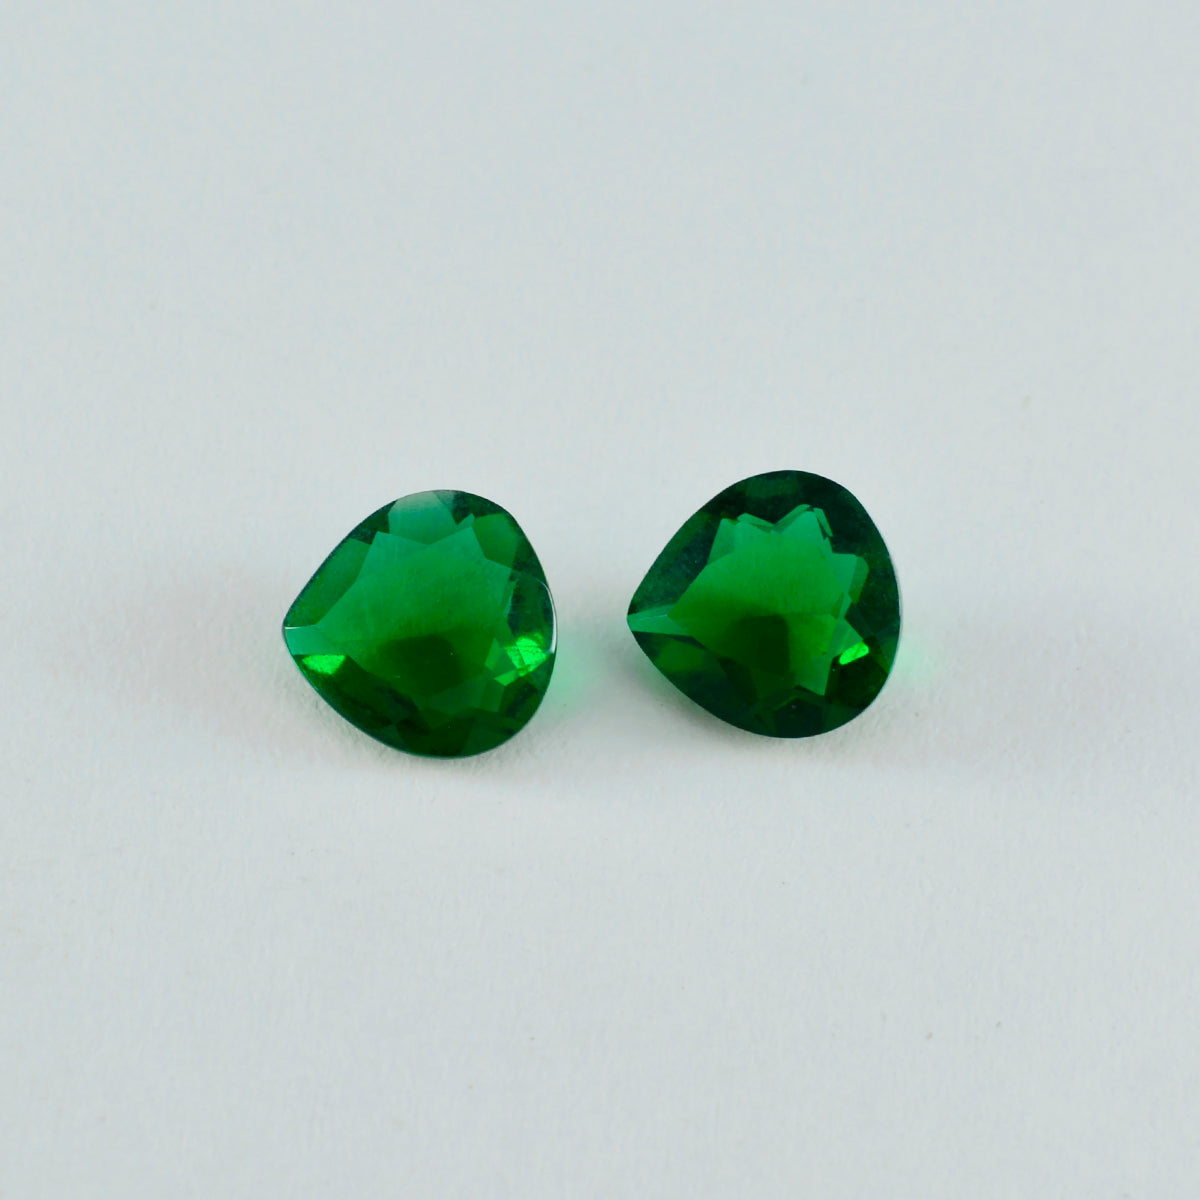 riyogems 1 шт., зеленый изумруд, граненый cz, 7x7 мм, в форме сердца, драгоценные камни прекрасного качества